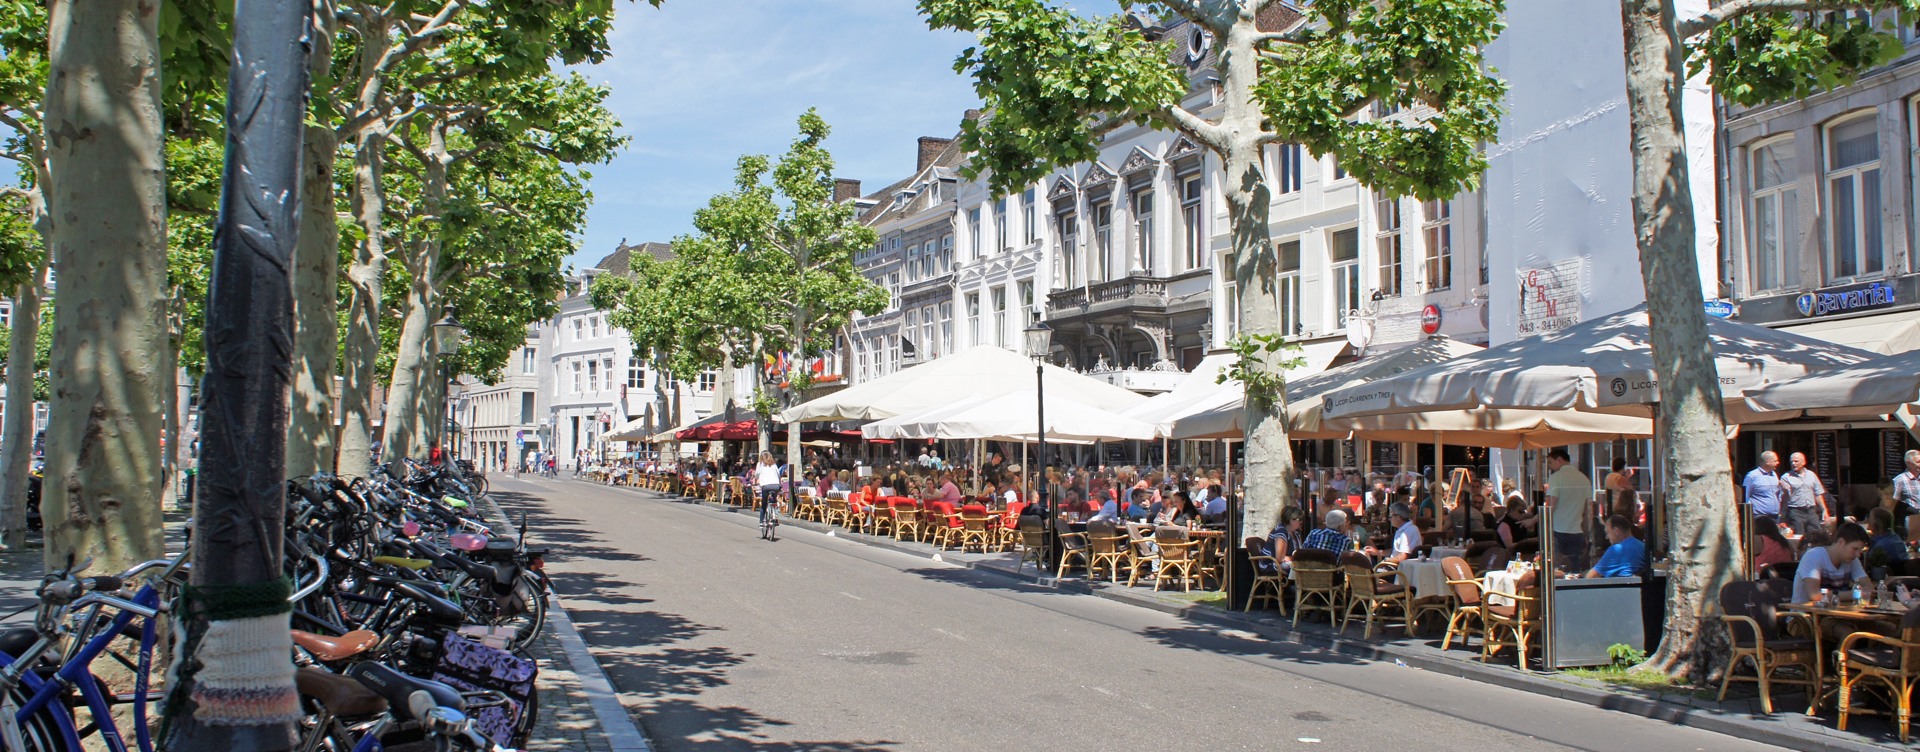 Ontdek onze tips en beleef
een onvergetelijk verblijf in Maastricht